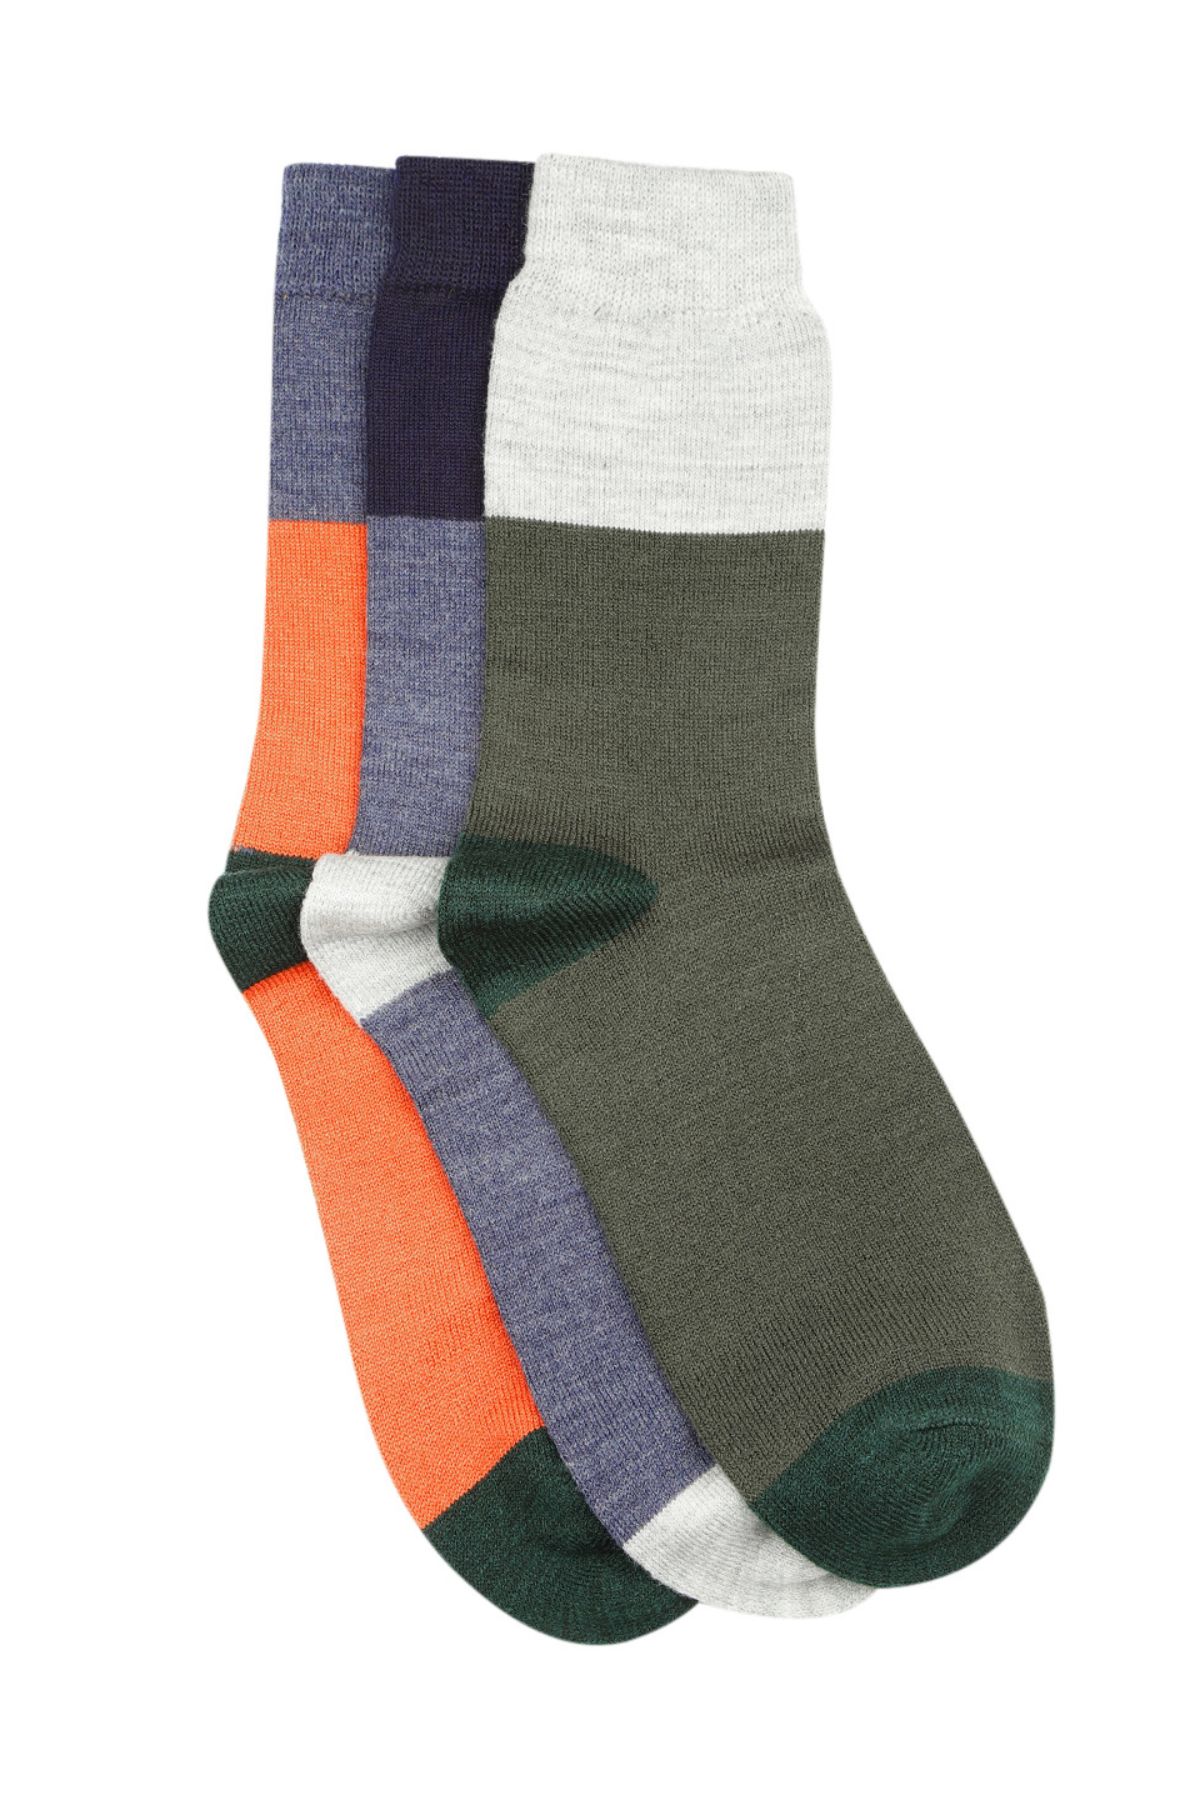 Wool Blend Colour blocked Socks Pack of 3 | Men